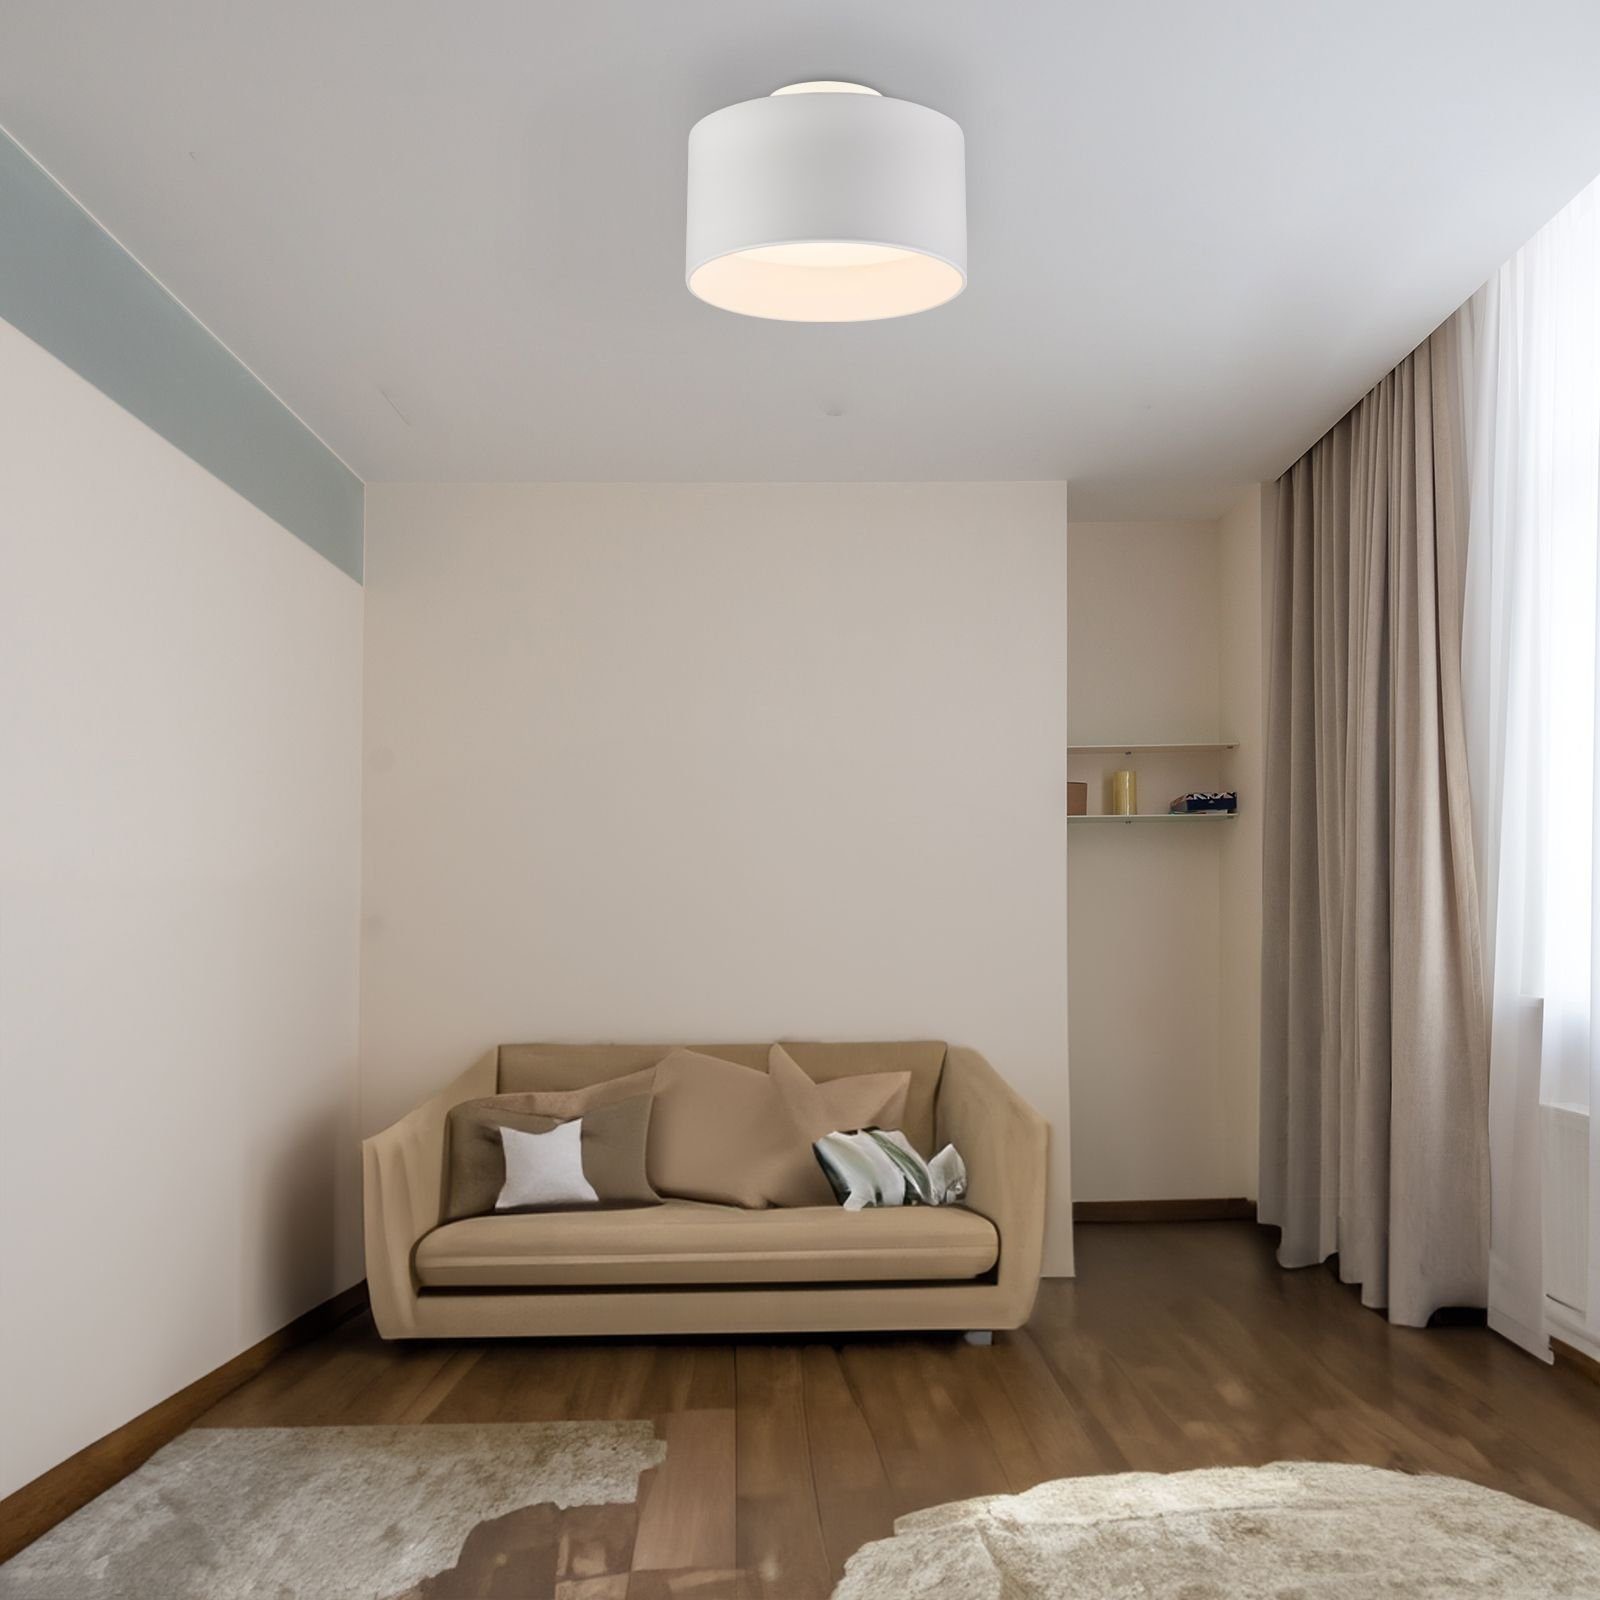 Globo Deckenleuchte Deckenlampe weiß, Esszimmer, Deckenleuchte Backlight, Flur LED, Warmweiß Warmweiß, fest GLOBO Schlafzimmer Wohnzimmer, modern, Küche LED integriert